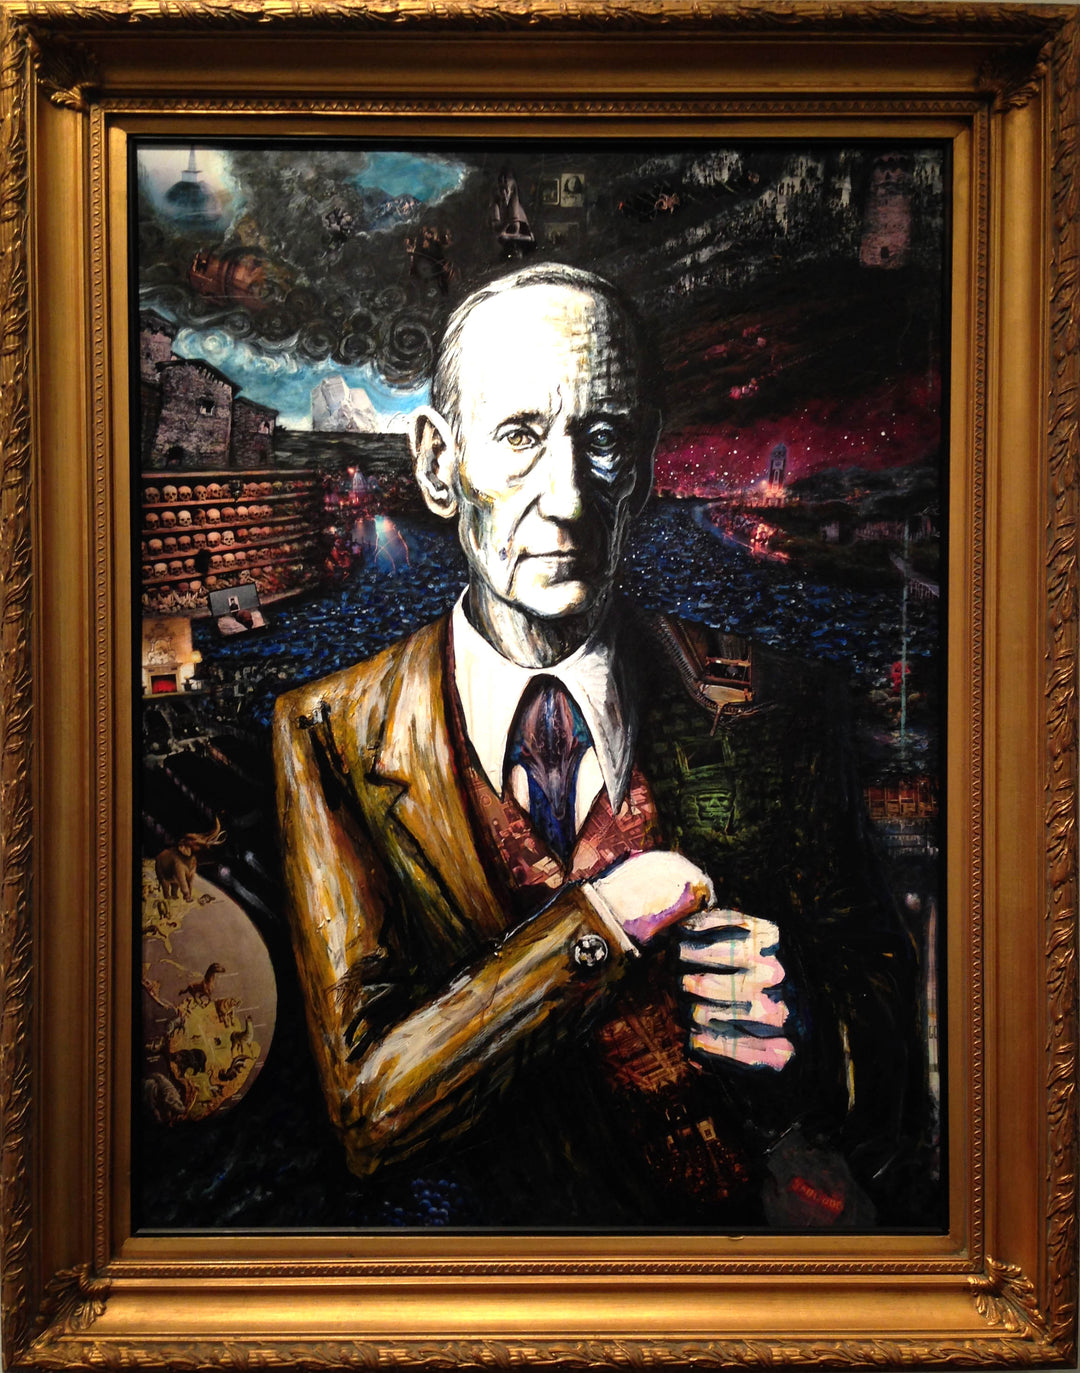 William Burroughs Collage Portrait